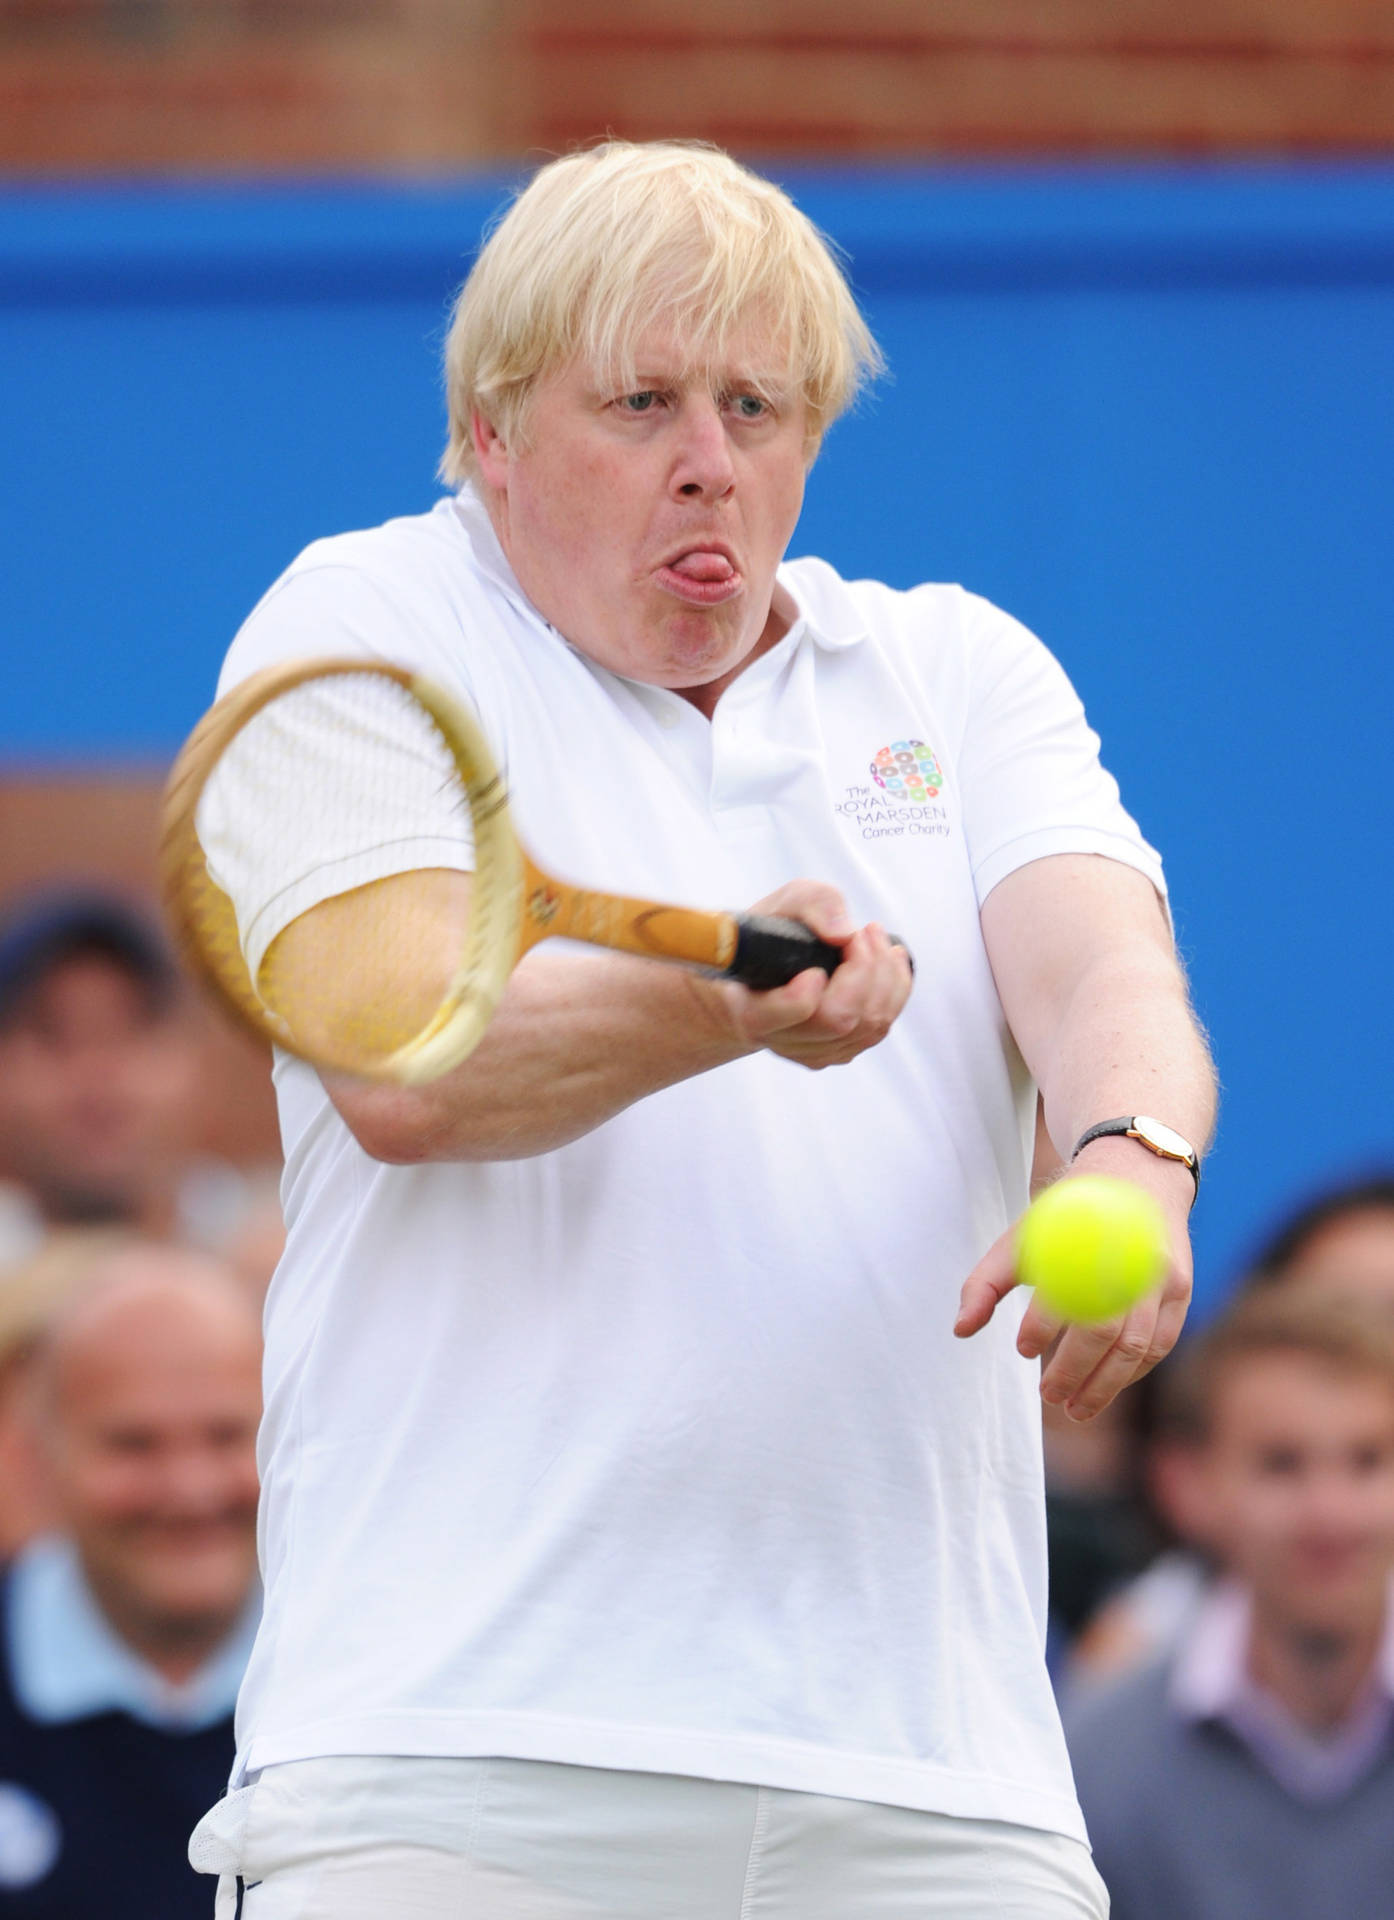 Borisjohnson Spielt Tennis. Wallpaper